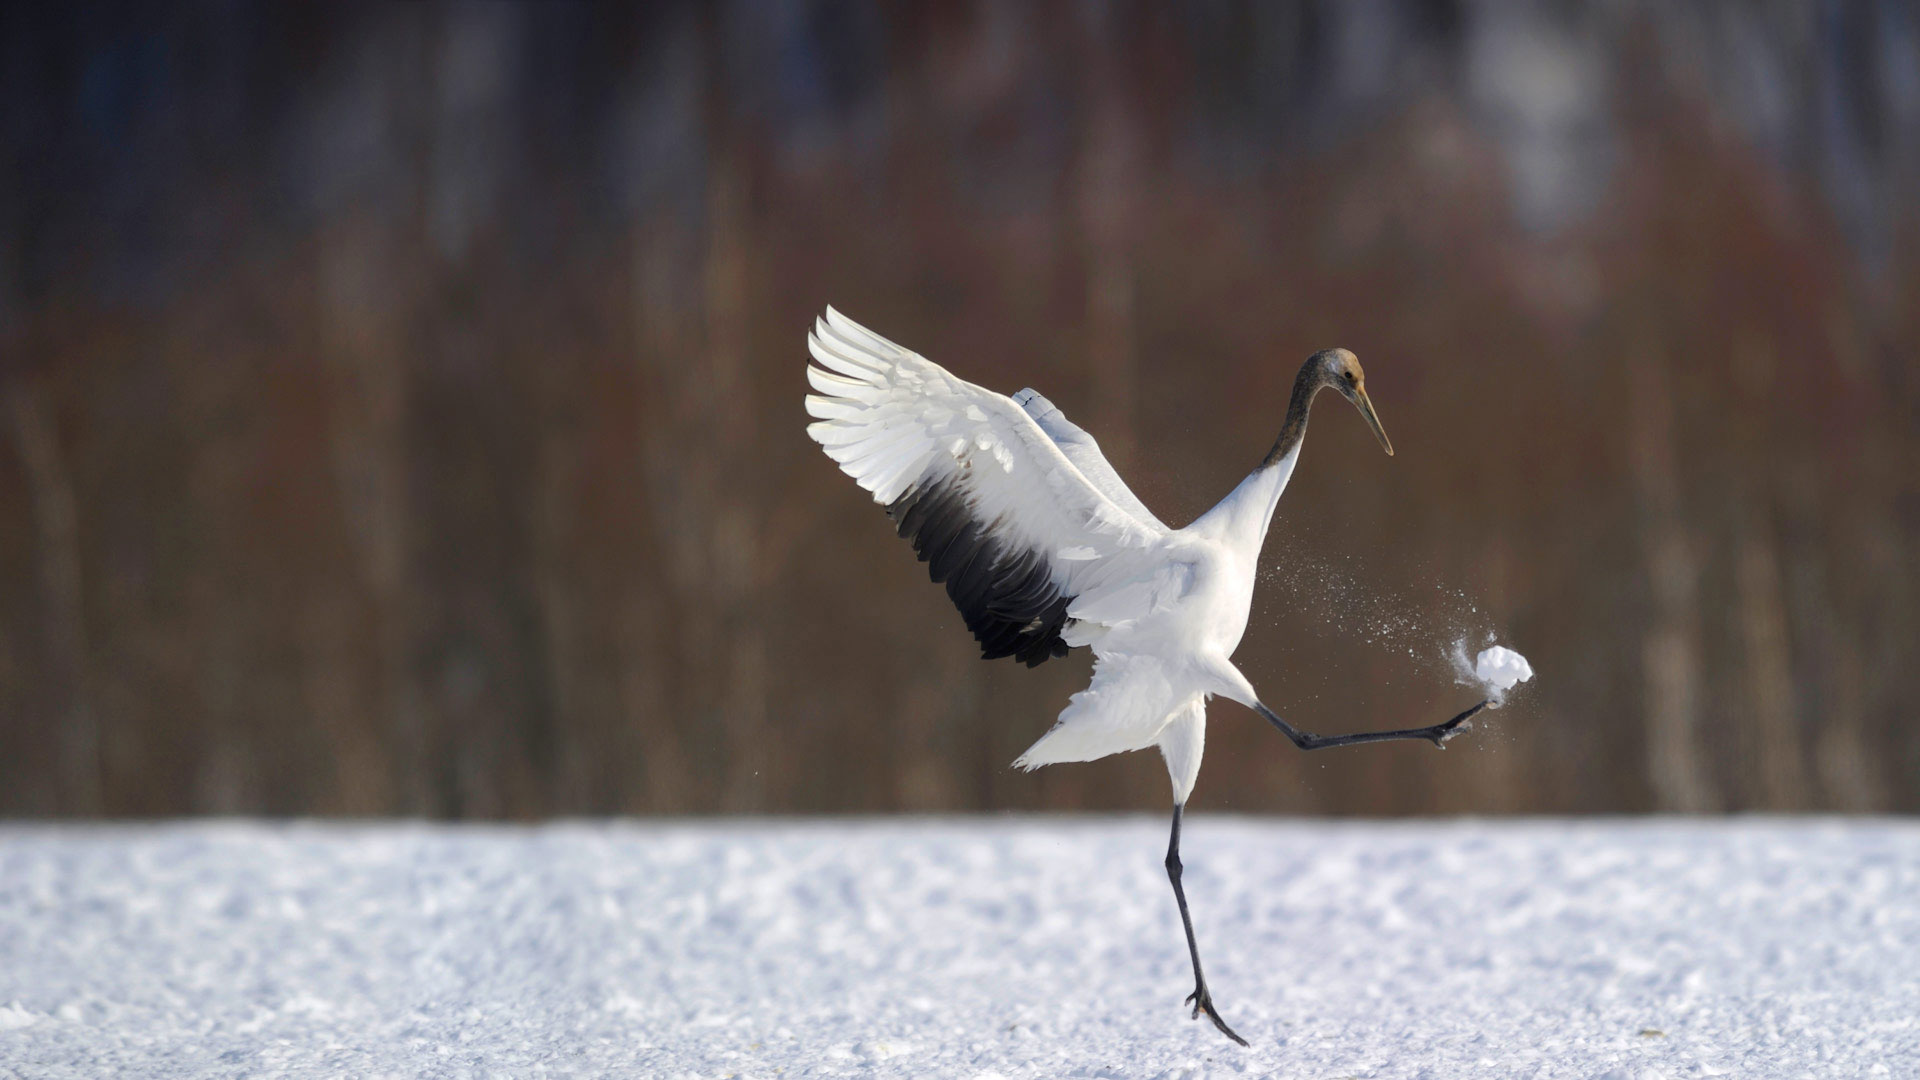 雪地里的一只丹顶鹤 日本北海道 笨翁网